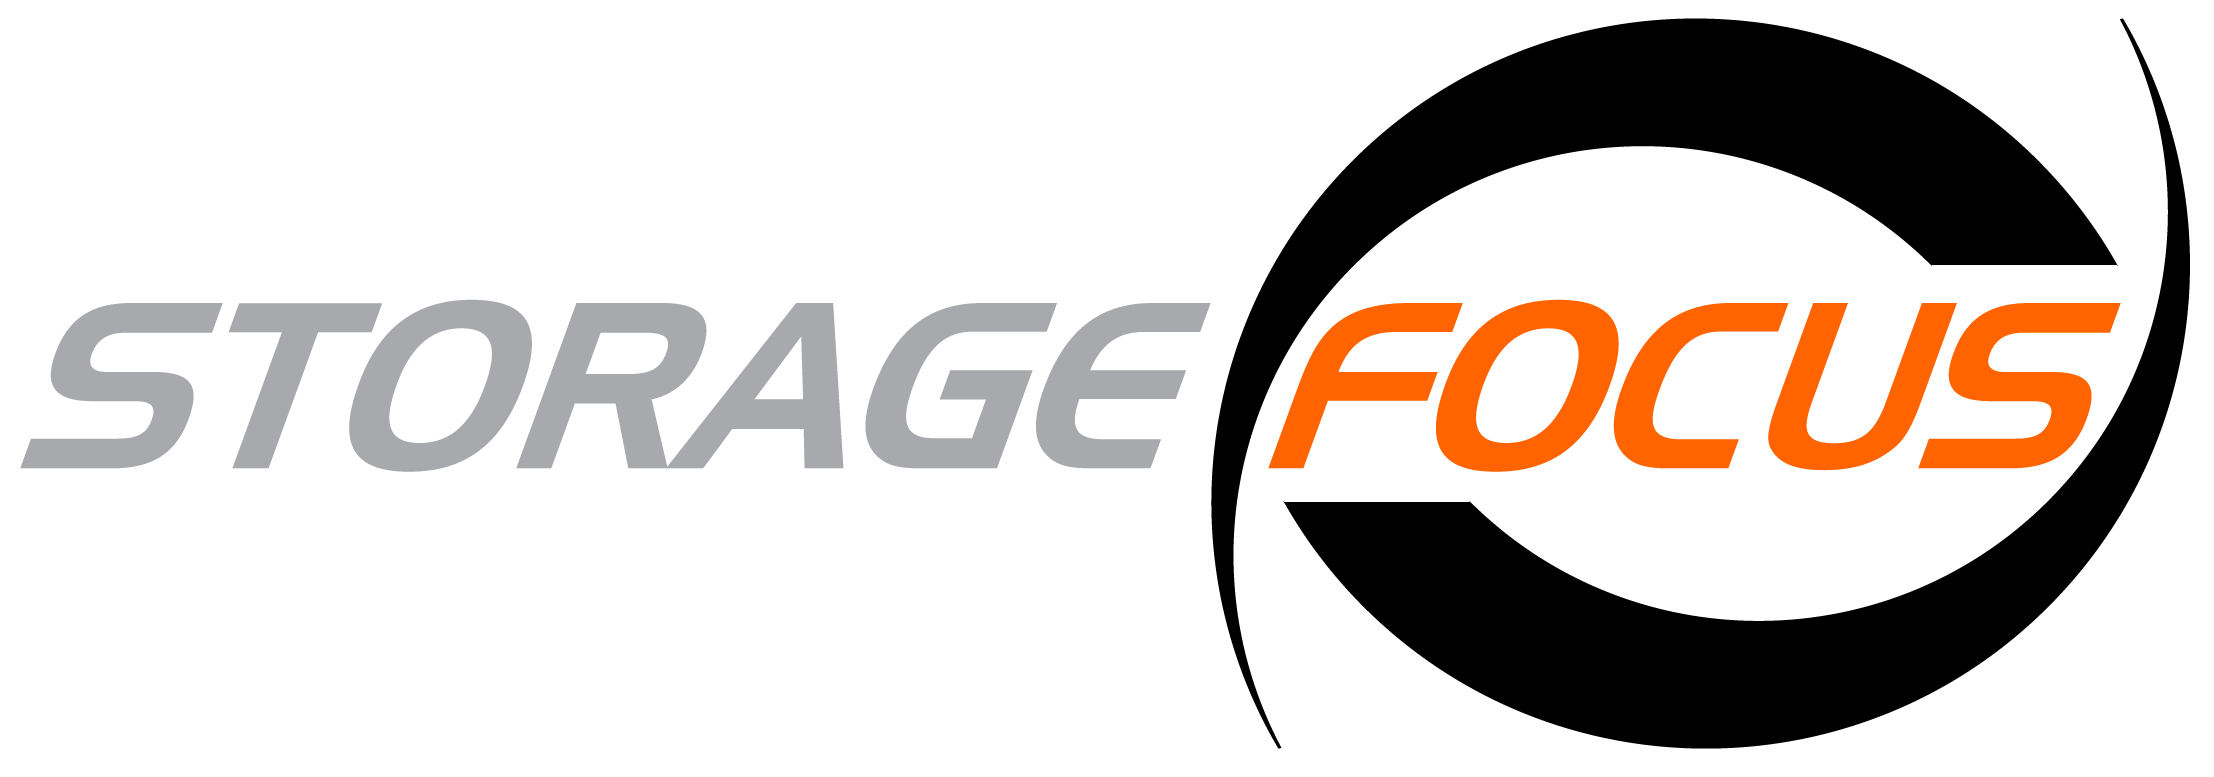 Focus Logo - Storage Focus